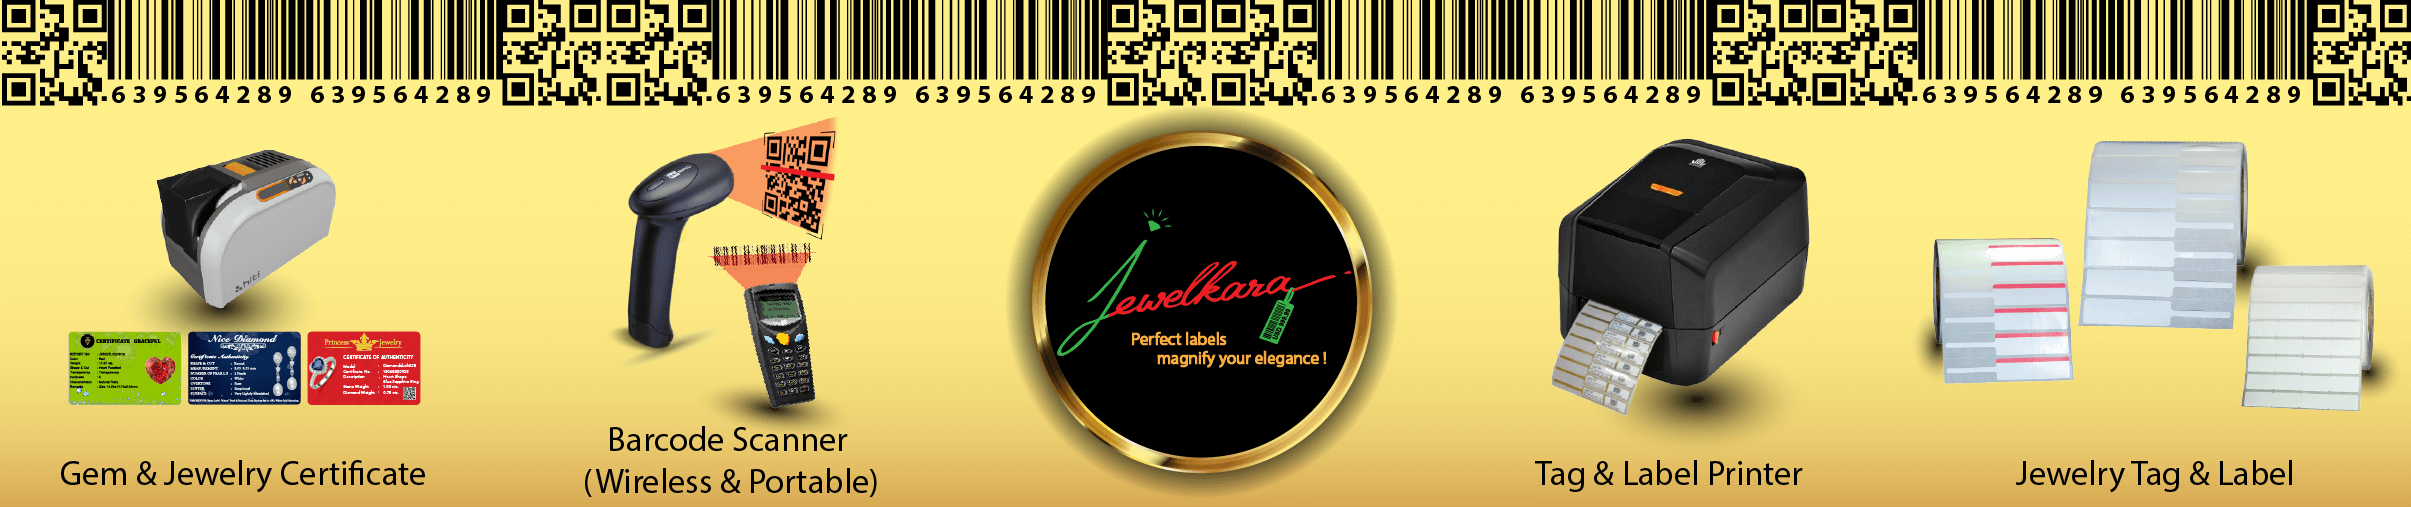 Jewelkara Co., Ltd.